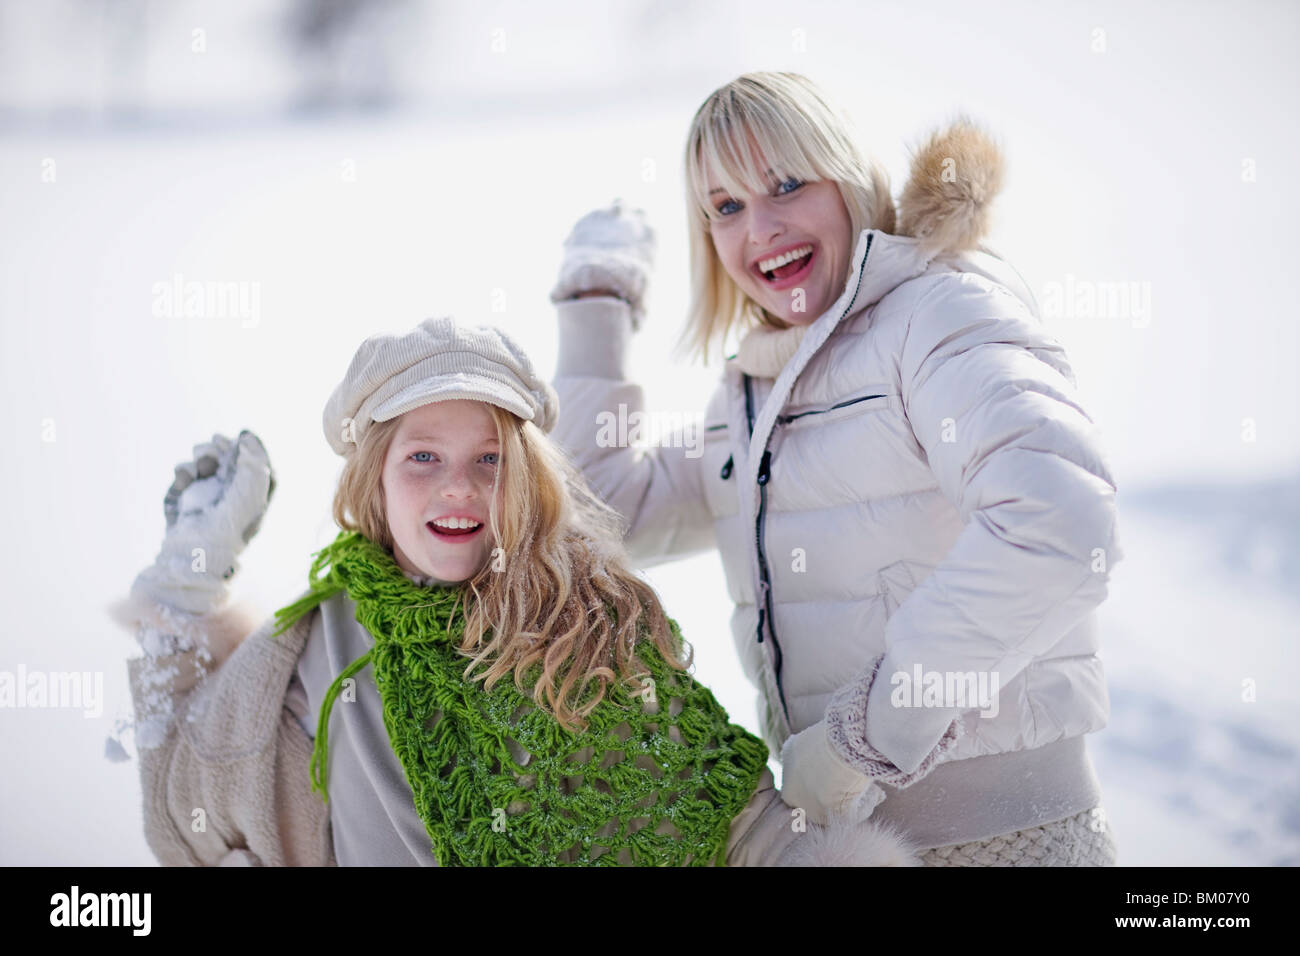 Снежки по взрослому. Игра в снежки с девушкой. Девушка играет в снежки. Красивые девушки играют в снежки. Snowball Fight девушка.